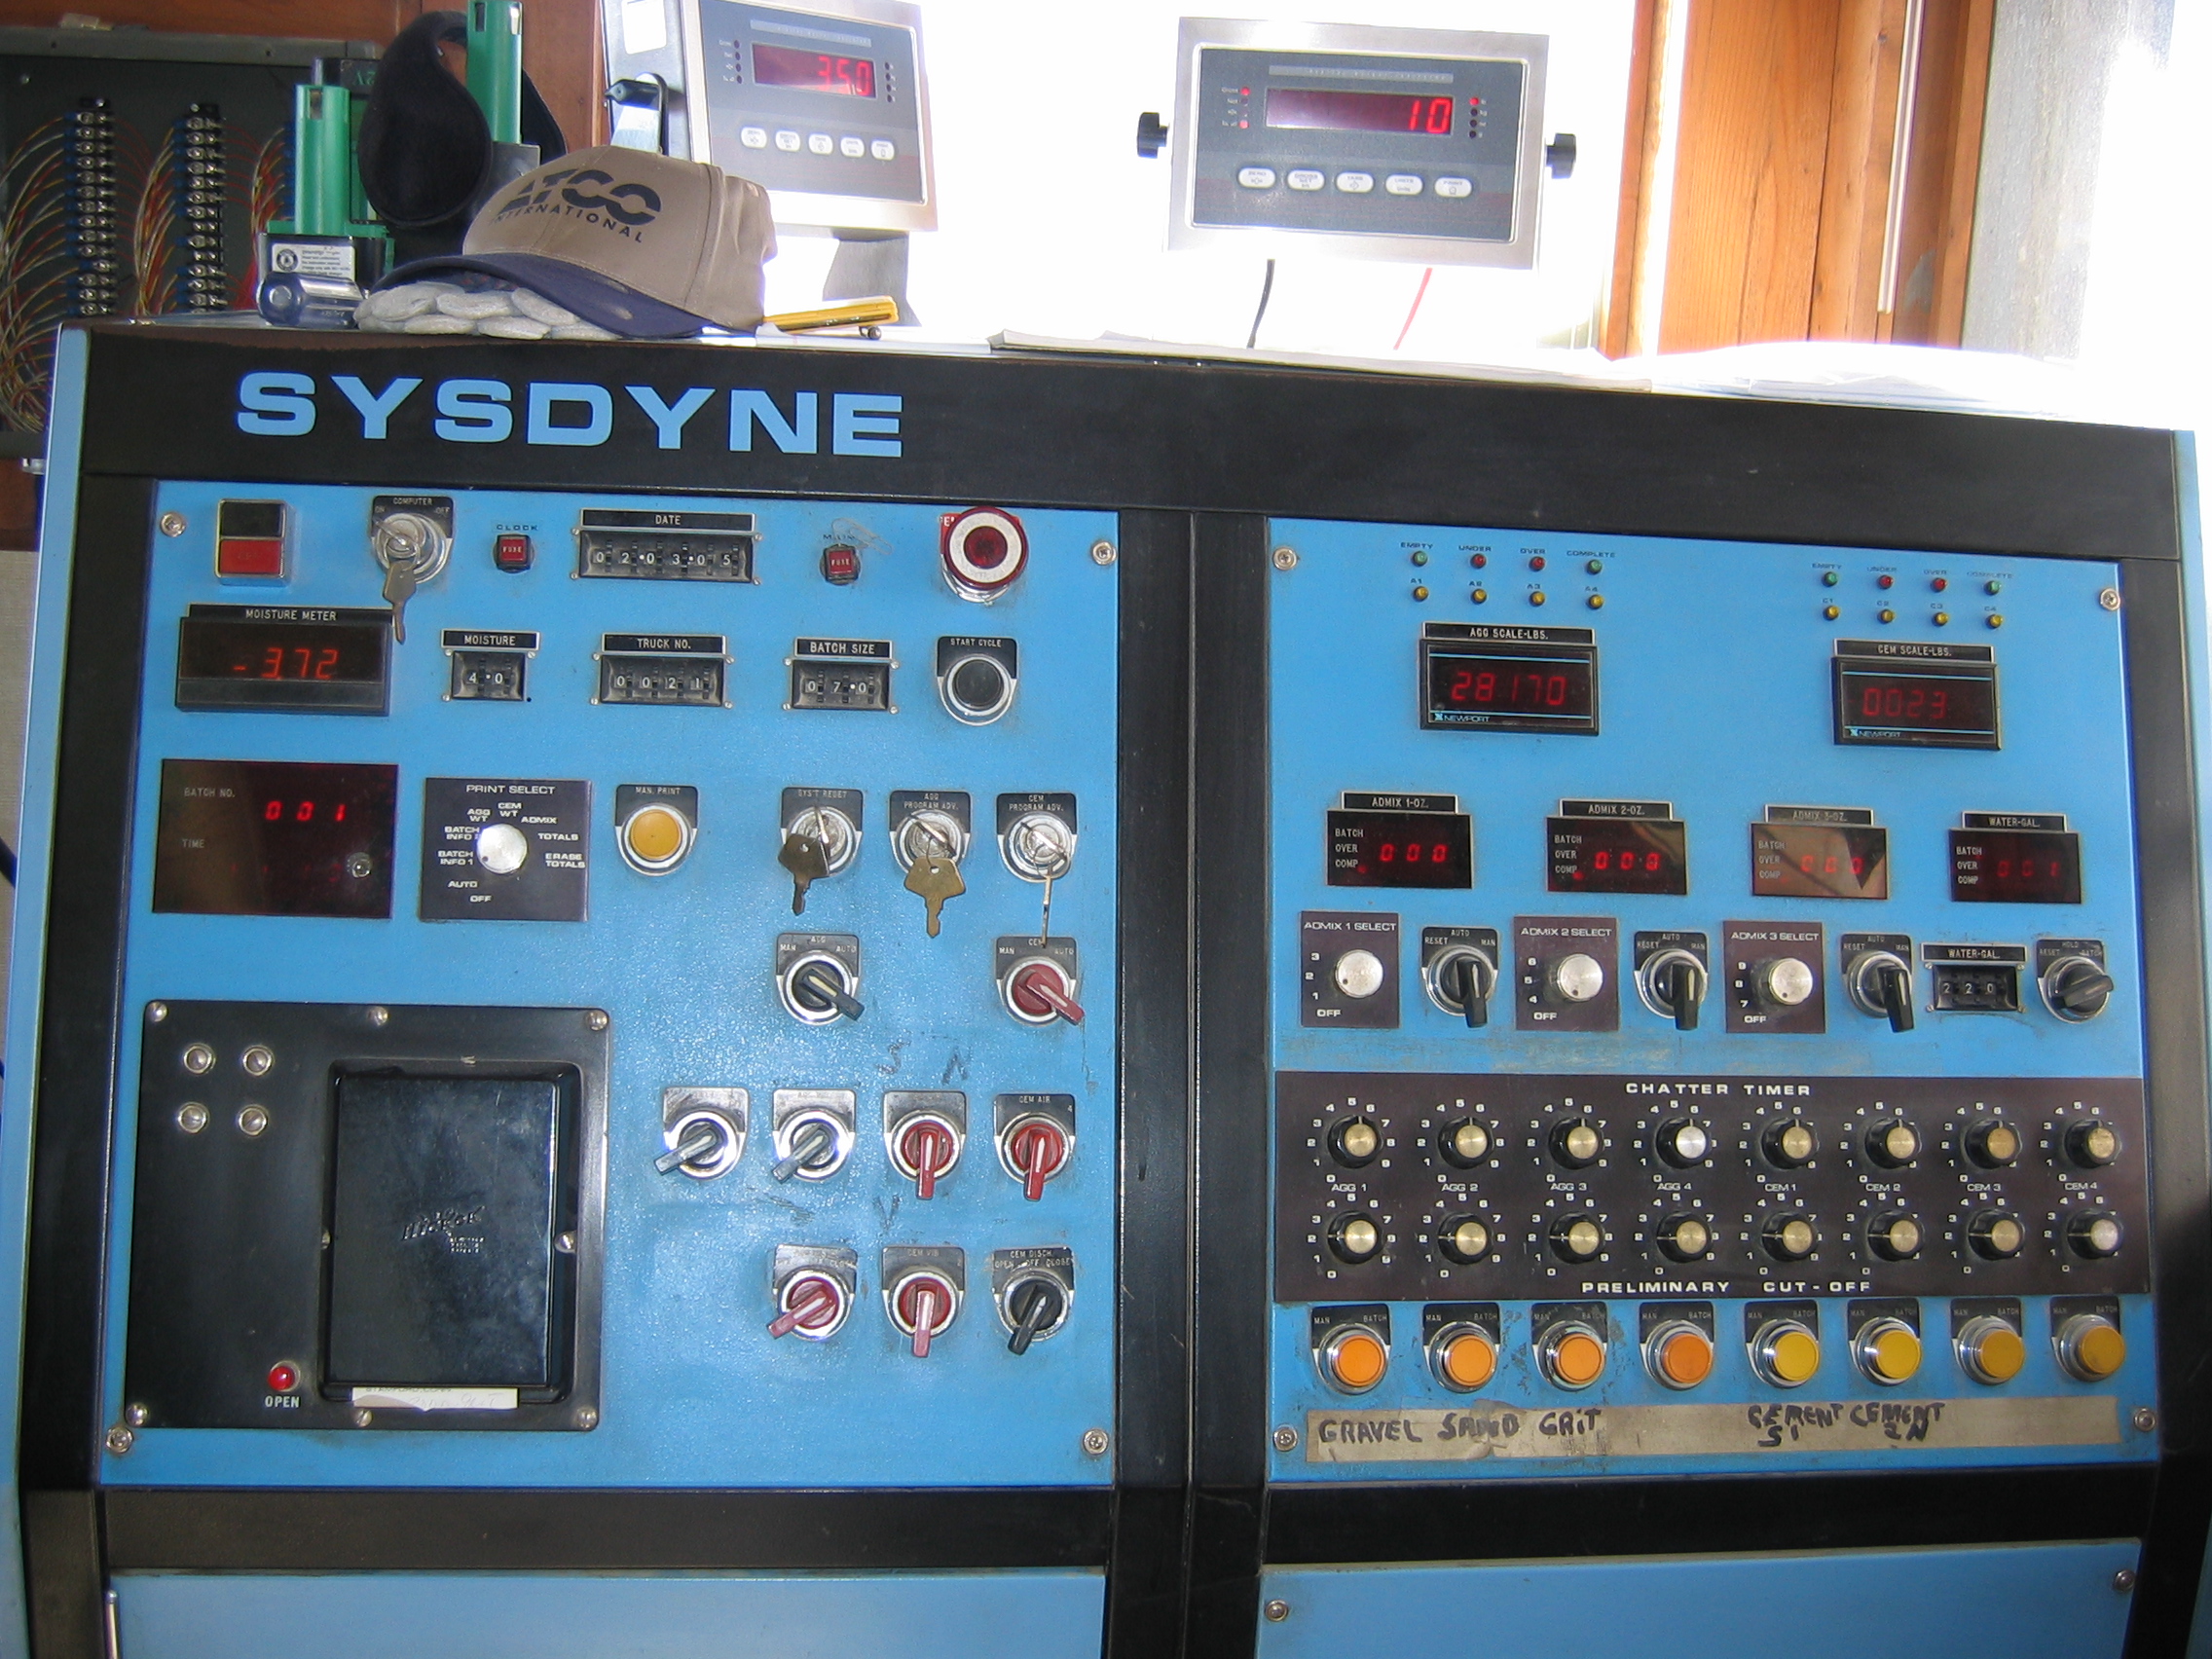 Sistema de dosificación SYSDYNE entre los 70s y 80s